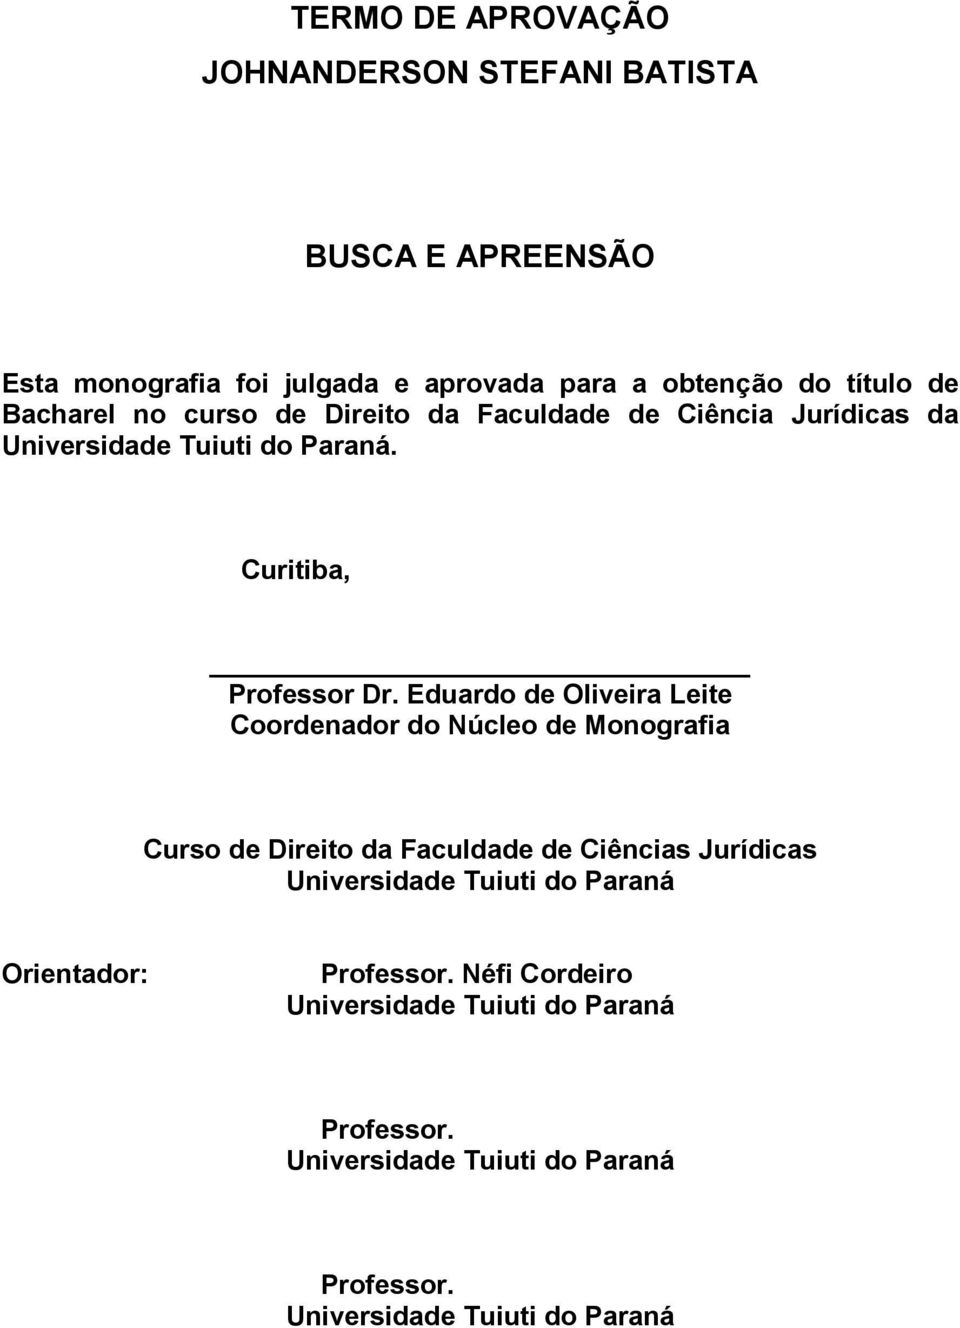 Eduardo de Oliveira Leite Coordenador do Núcleo de Monografia Curso de Direito da Faculdade de Ciências Jurídicas Universidade Tuiuti do